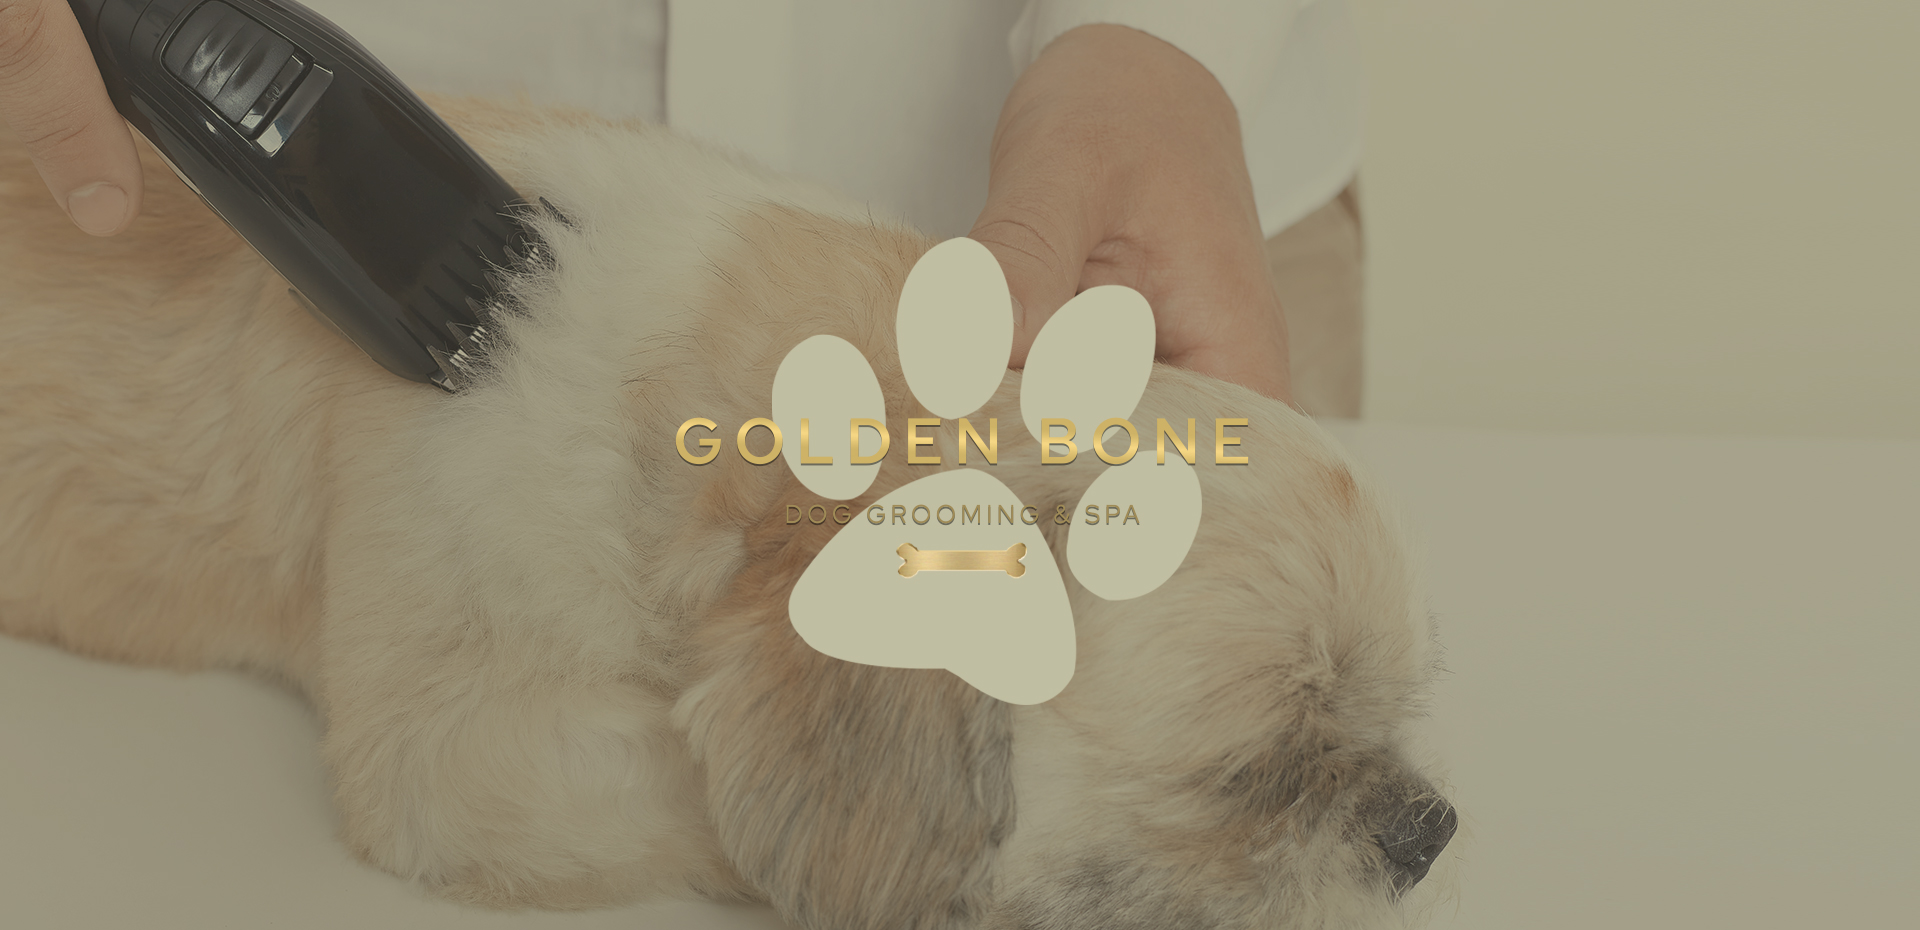 Golden bone